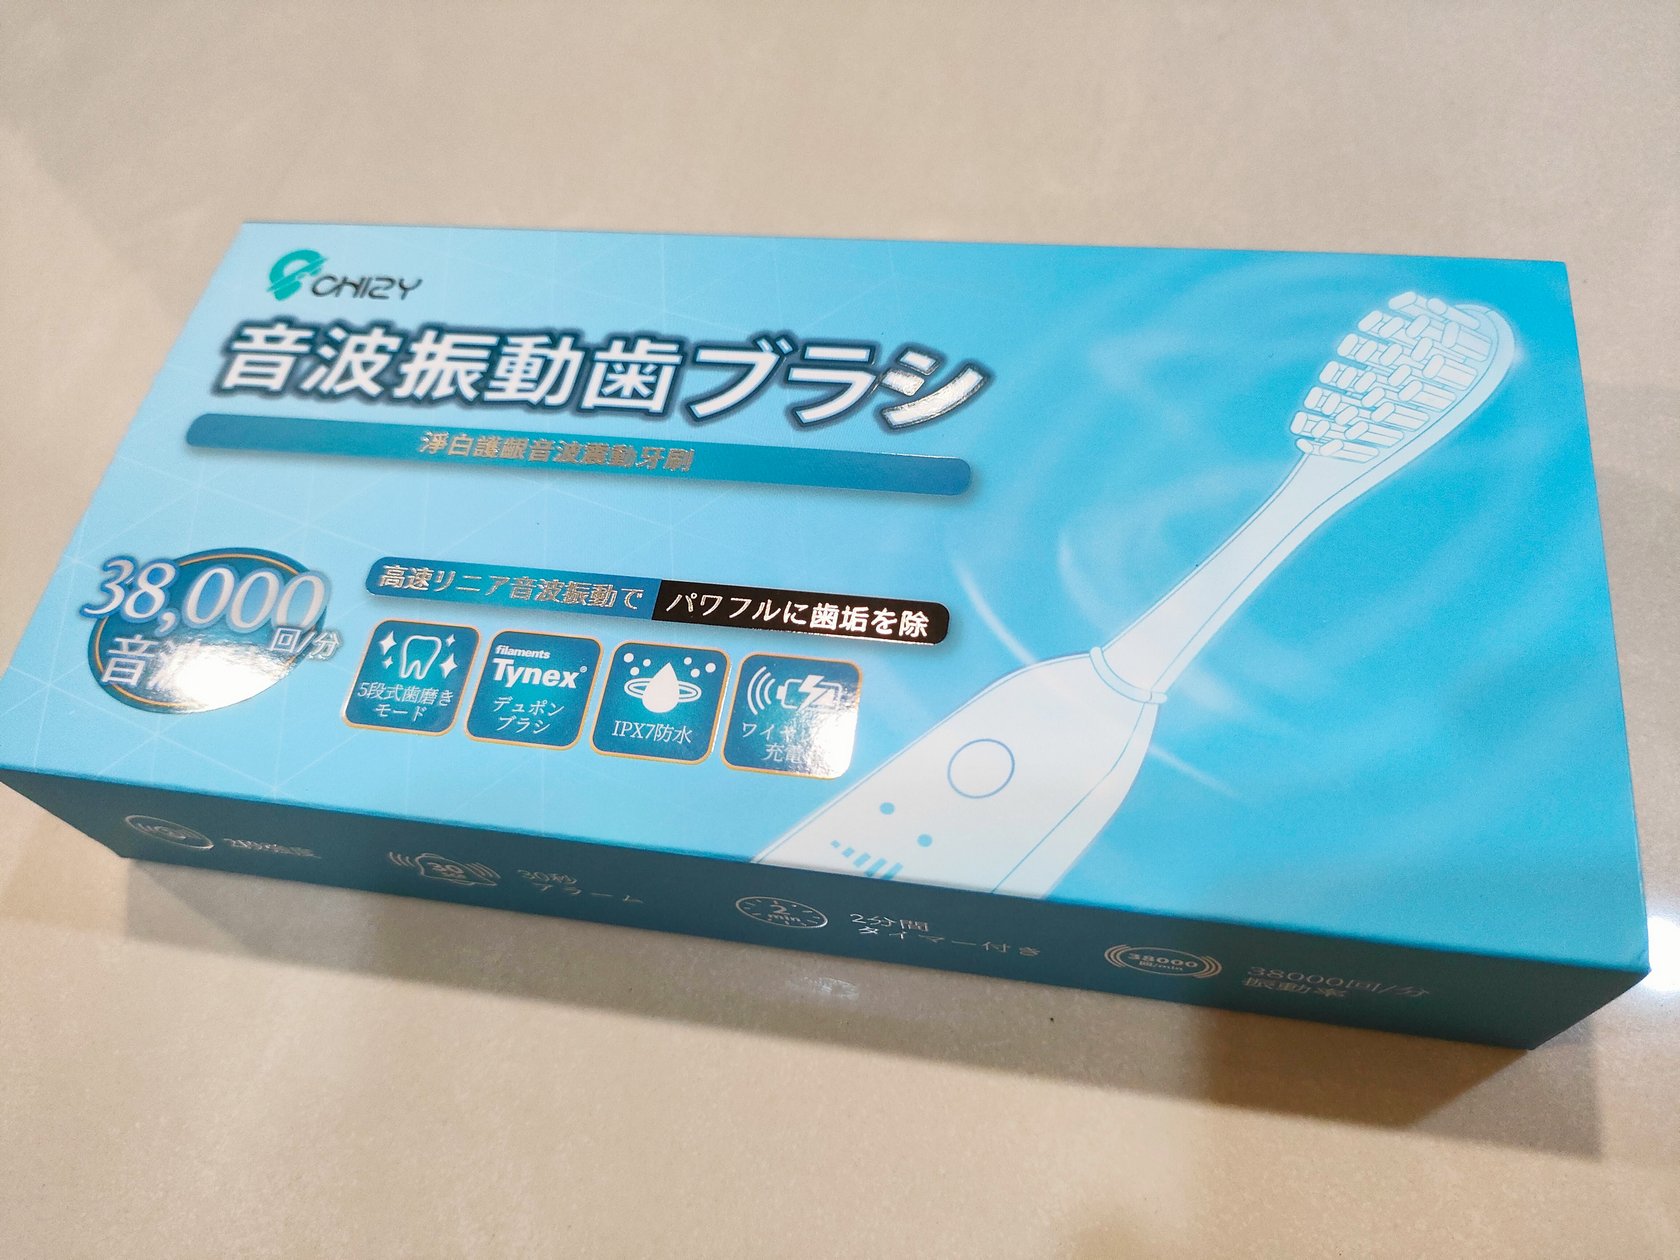 電動牙刷開箱 CHIZY 淨白護齦音波震動牙刷